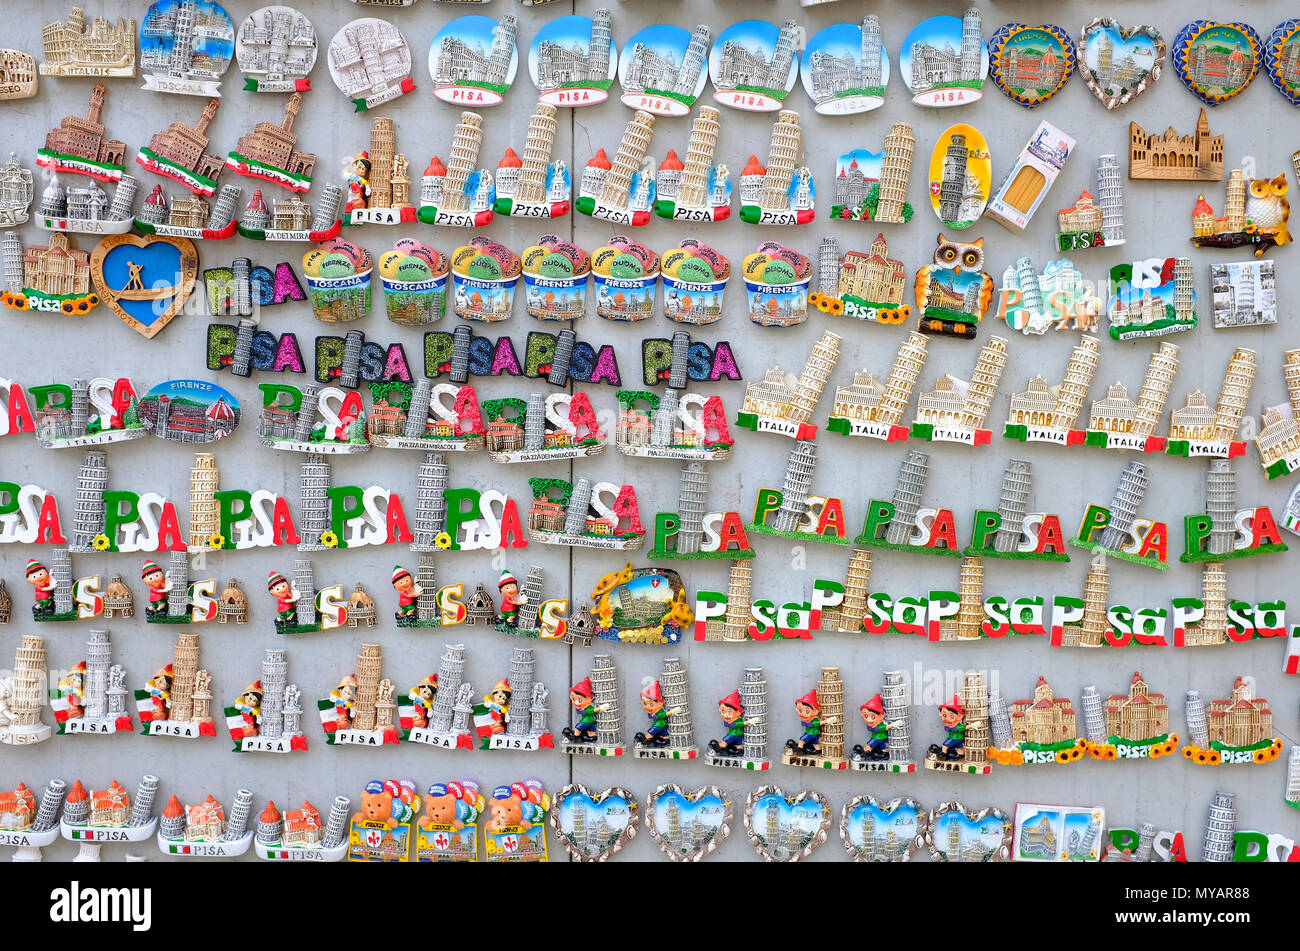 Den schiefen Turm von Pisa Neuheit Souvenirs am Marktstand, Toskana, Italien Stockfoto